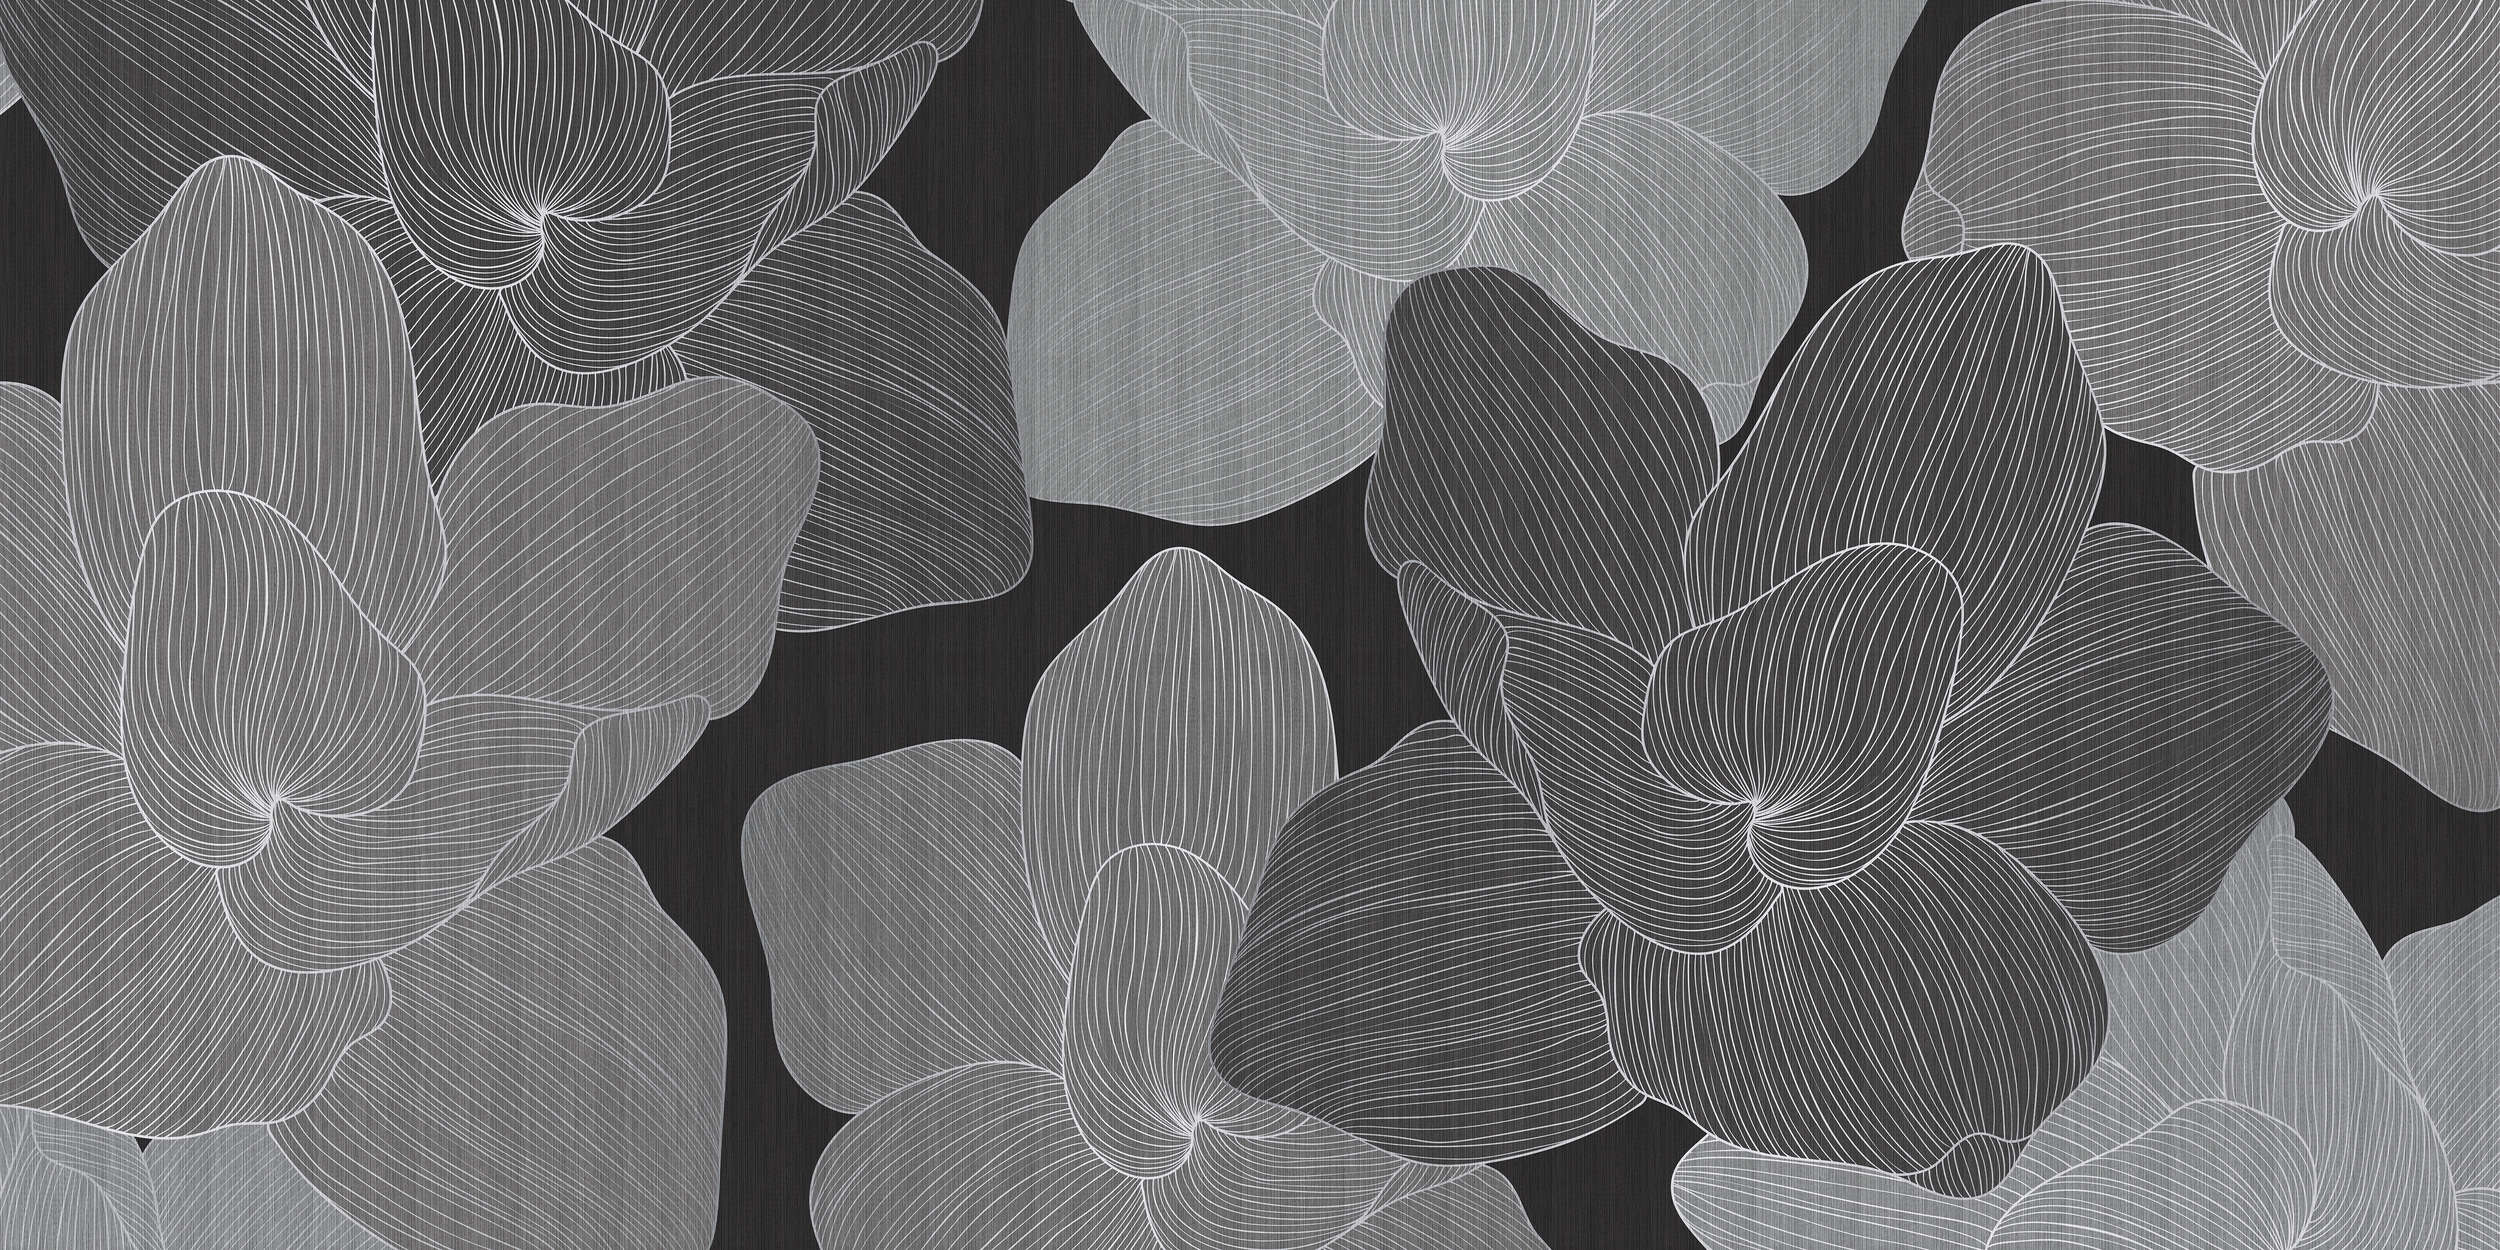             Secret Place 1 - papier peint monochrome fleurs, noir & gris
        